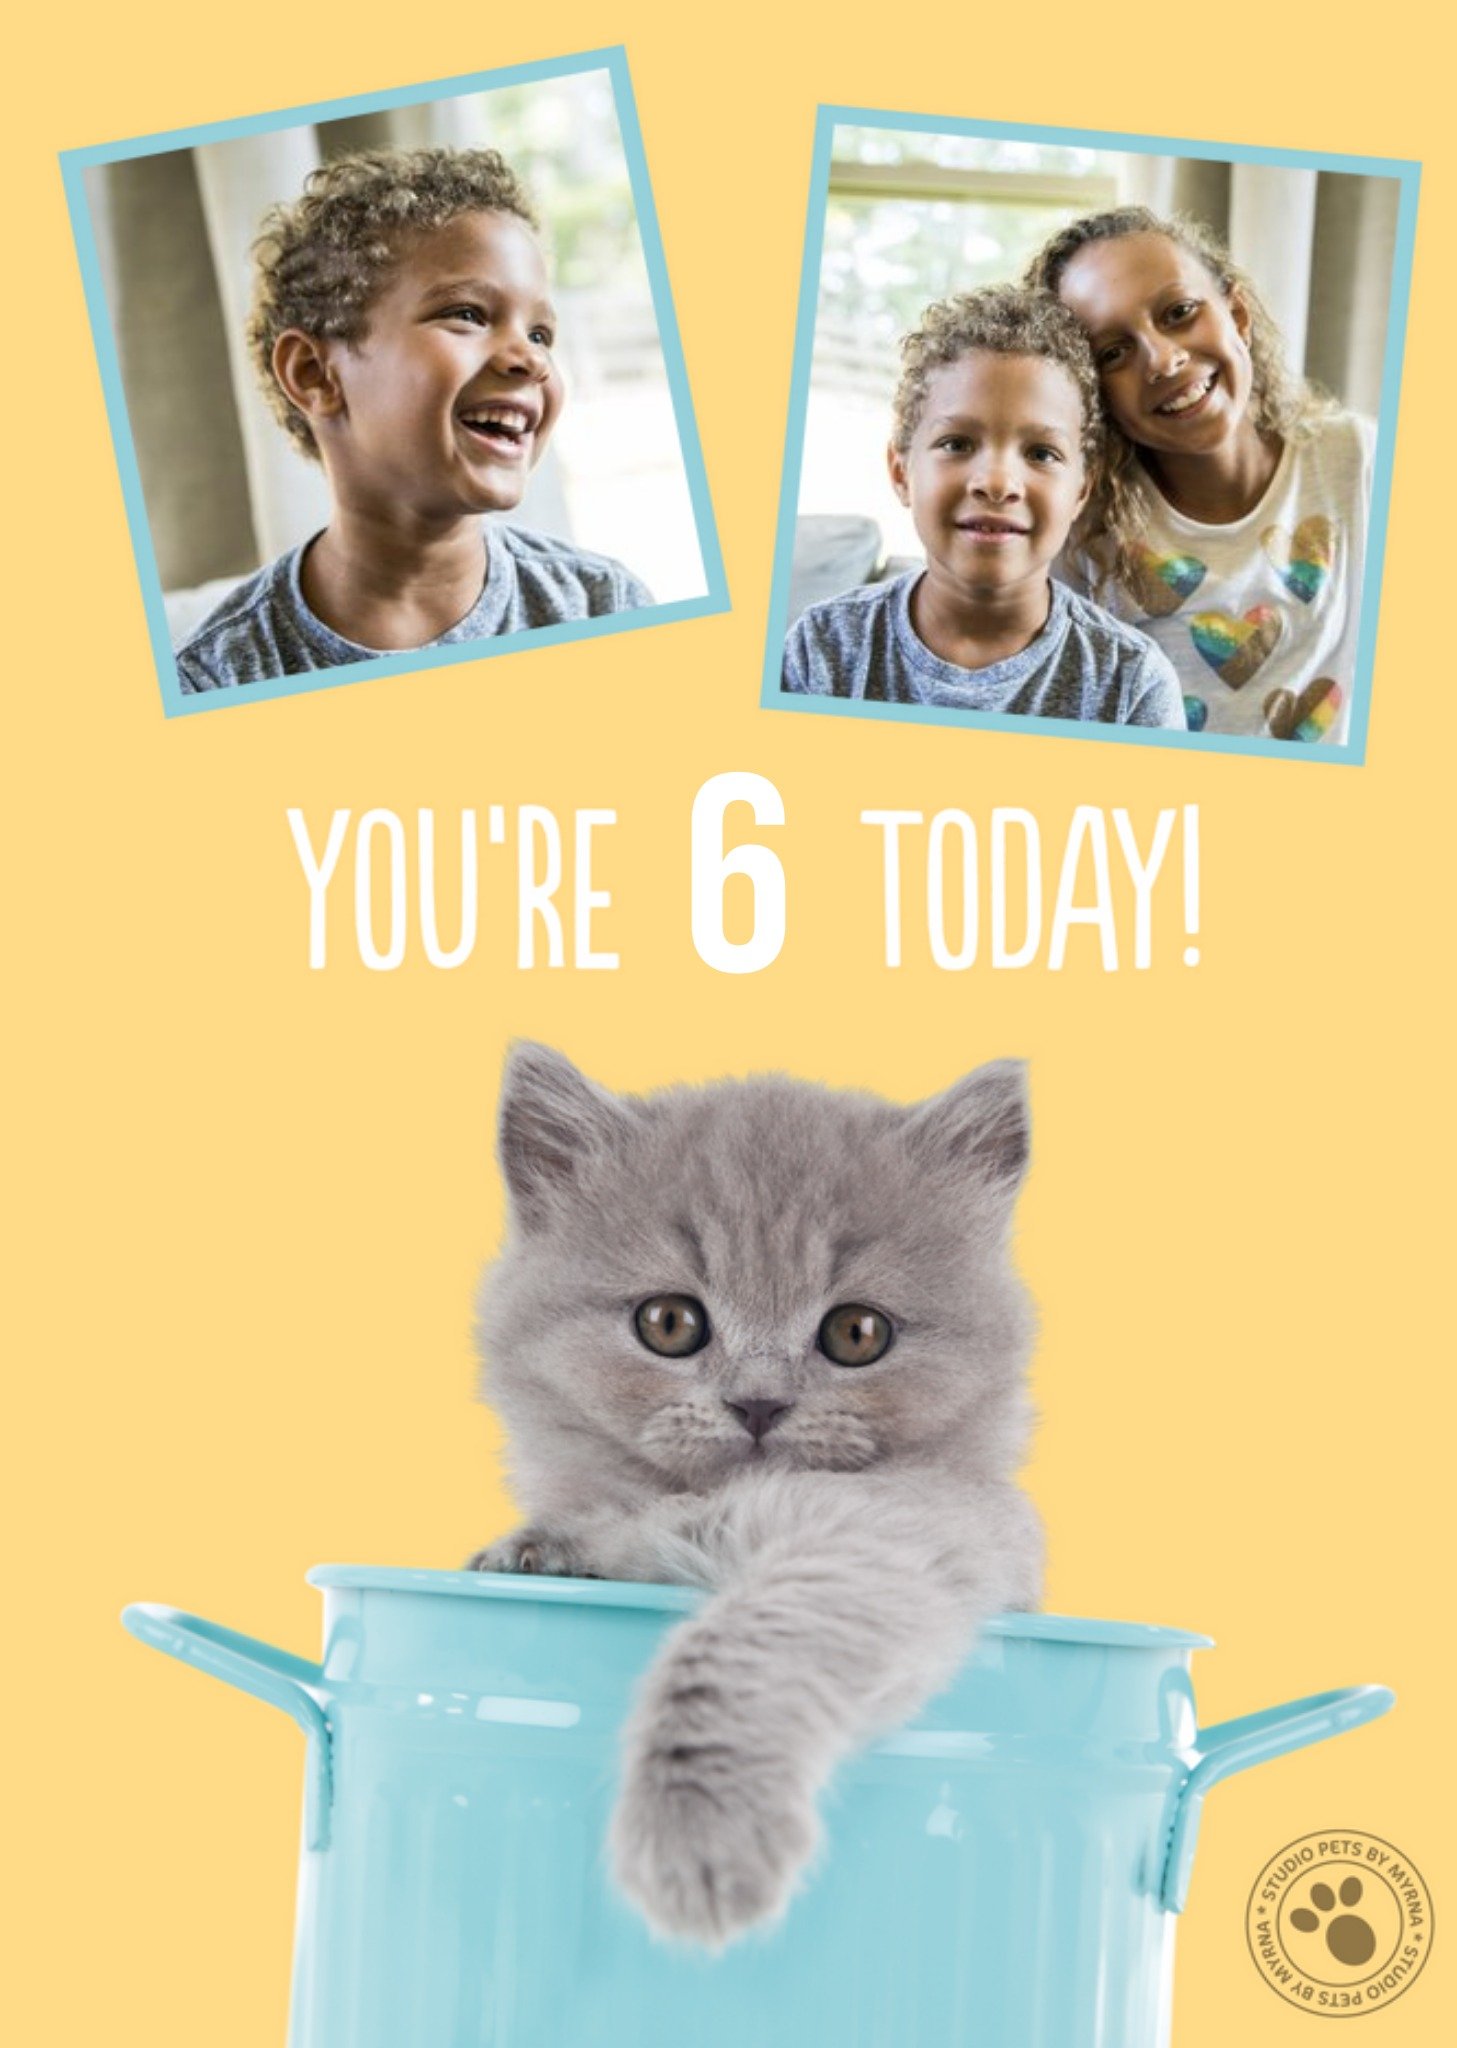 Studio Pets Kitten 6 Today Photo Upload Birthday Card, Large